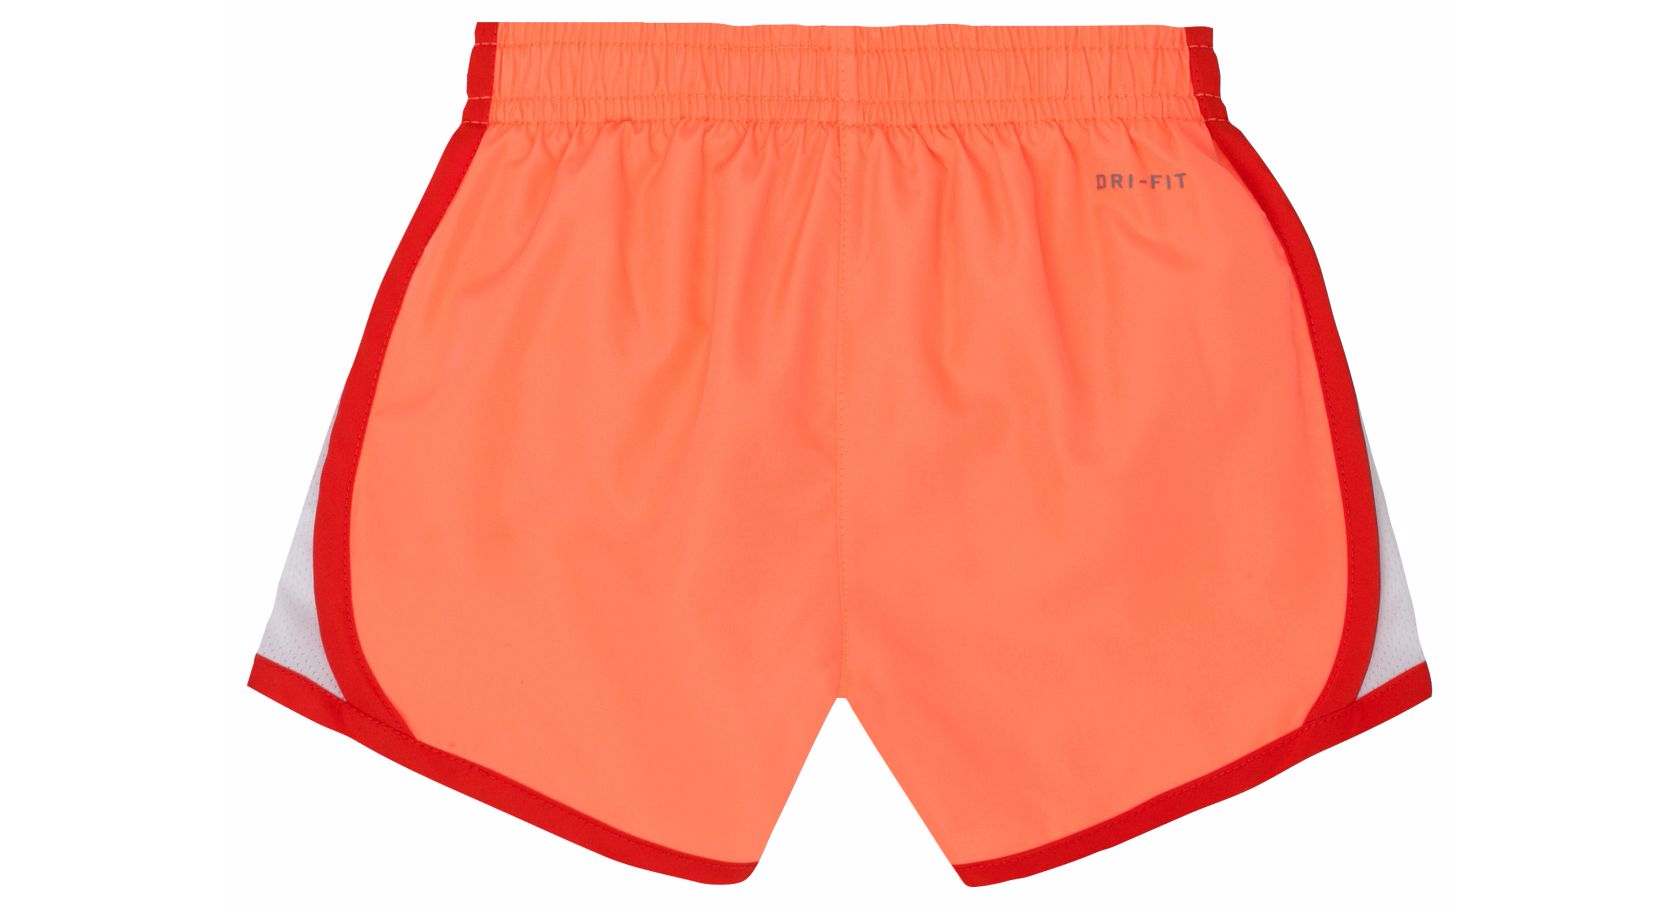 orange running shorts nike adidas png download #42519